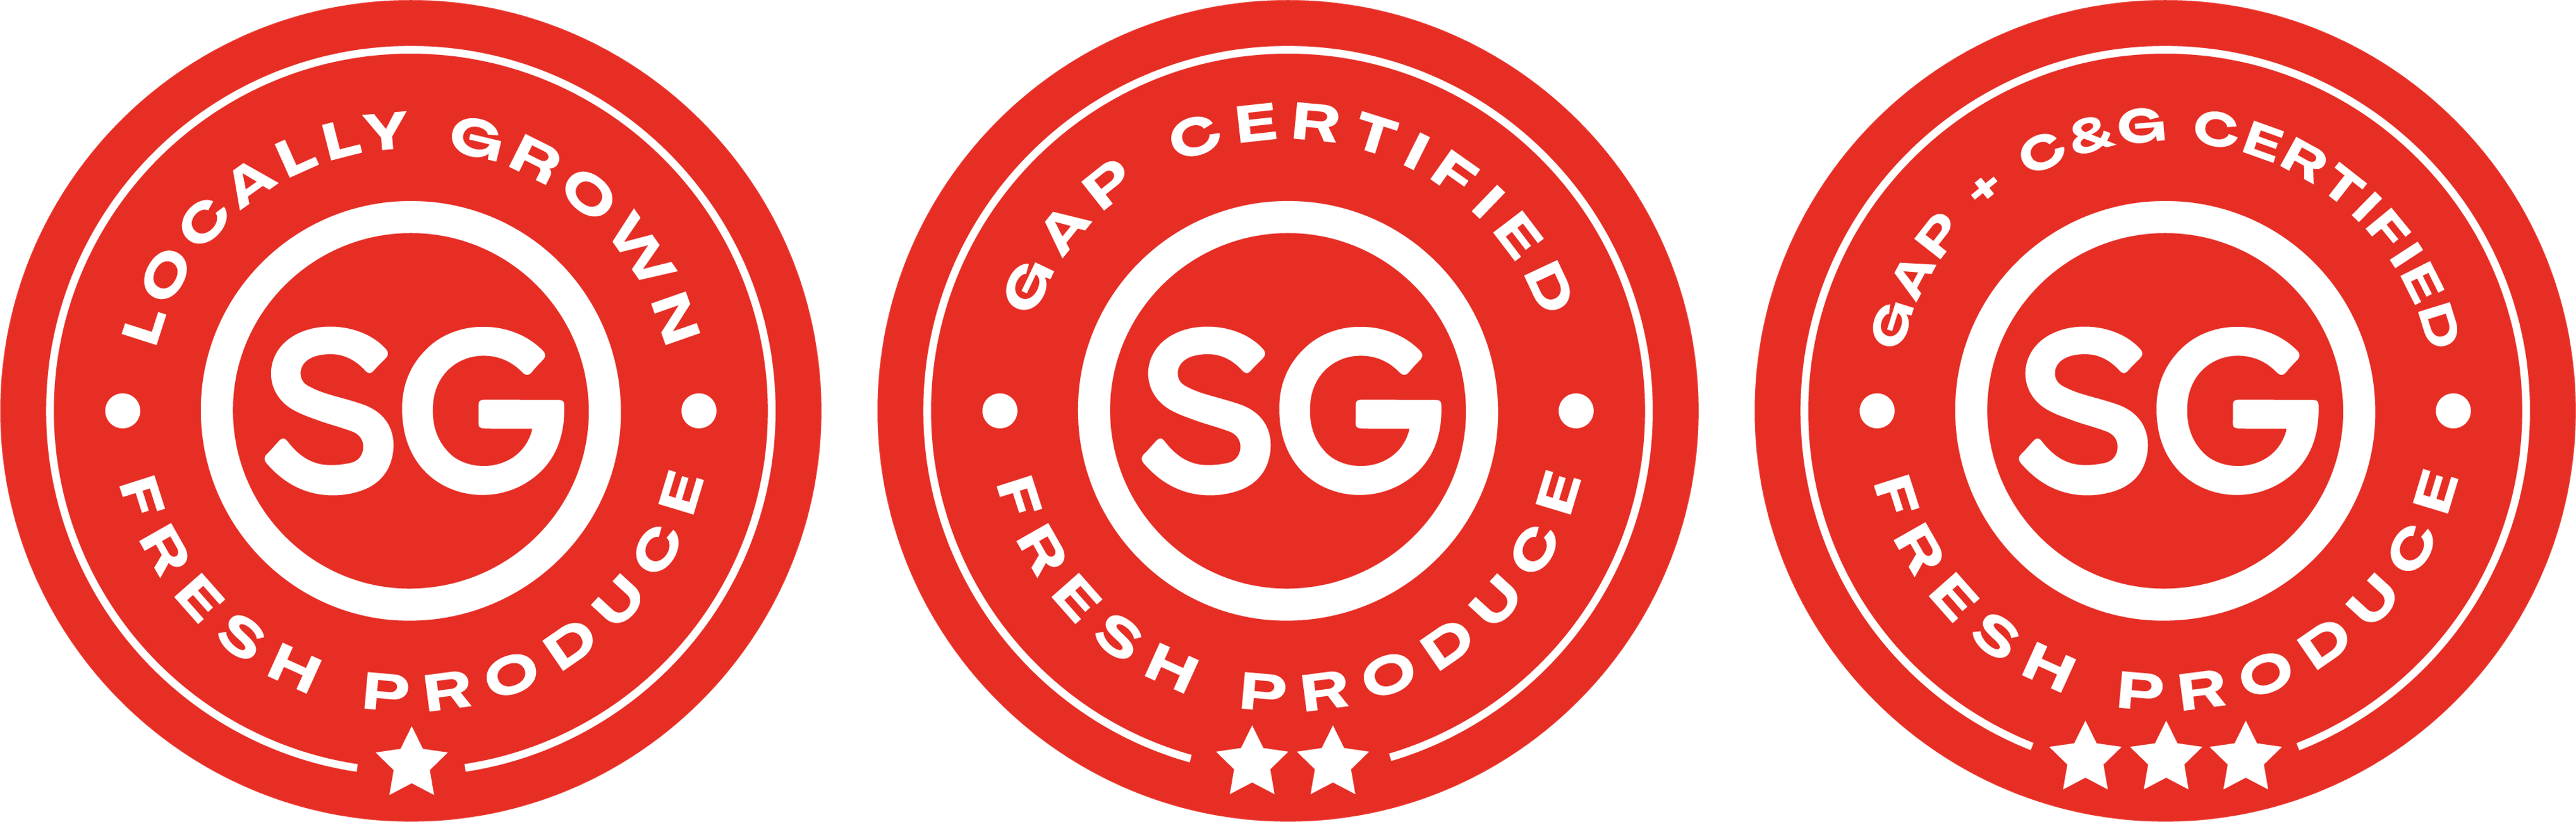 Singapore Fresh Produce badges